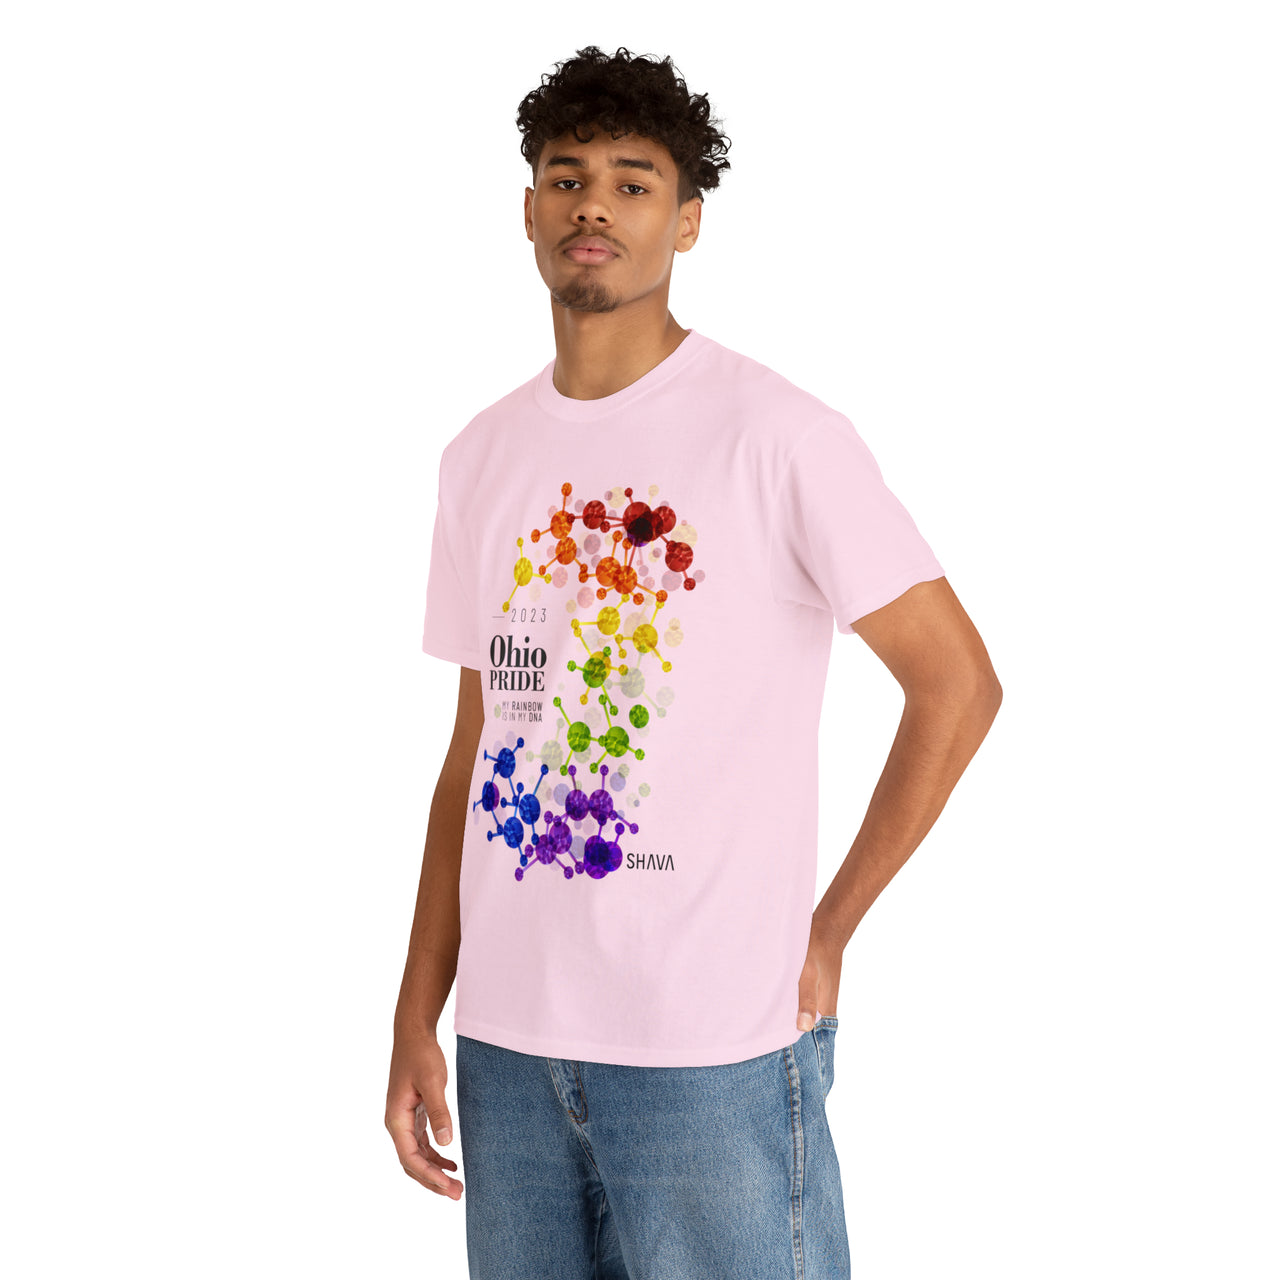 SHAVA CO Rainbow Flag 2023 Pride, Ohio Unisex Heavy Cotton Tee - My Rainbow Is In My DNA Printify